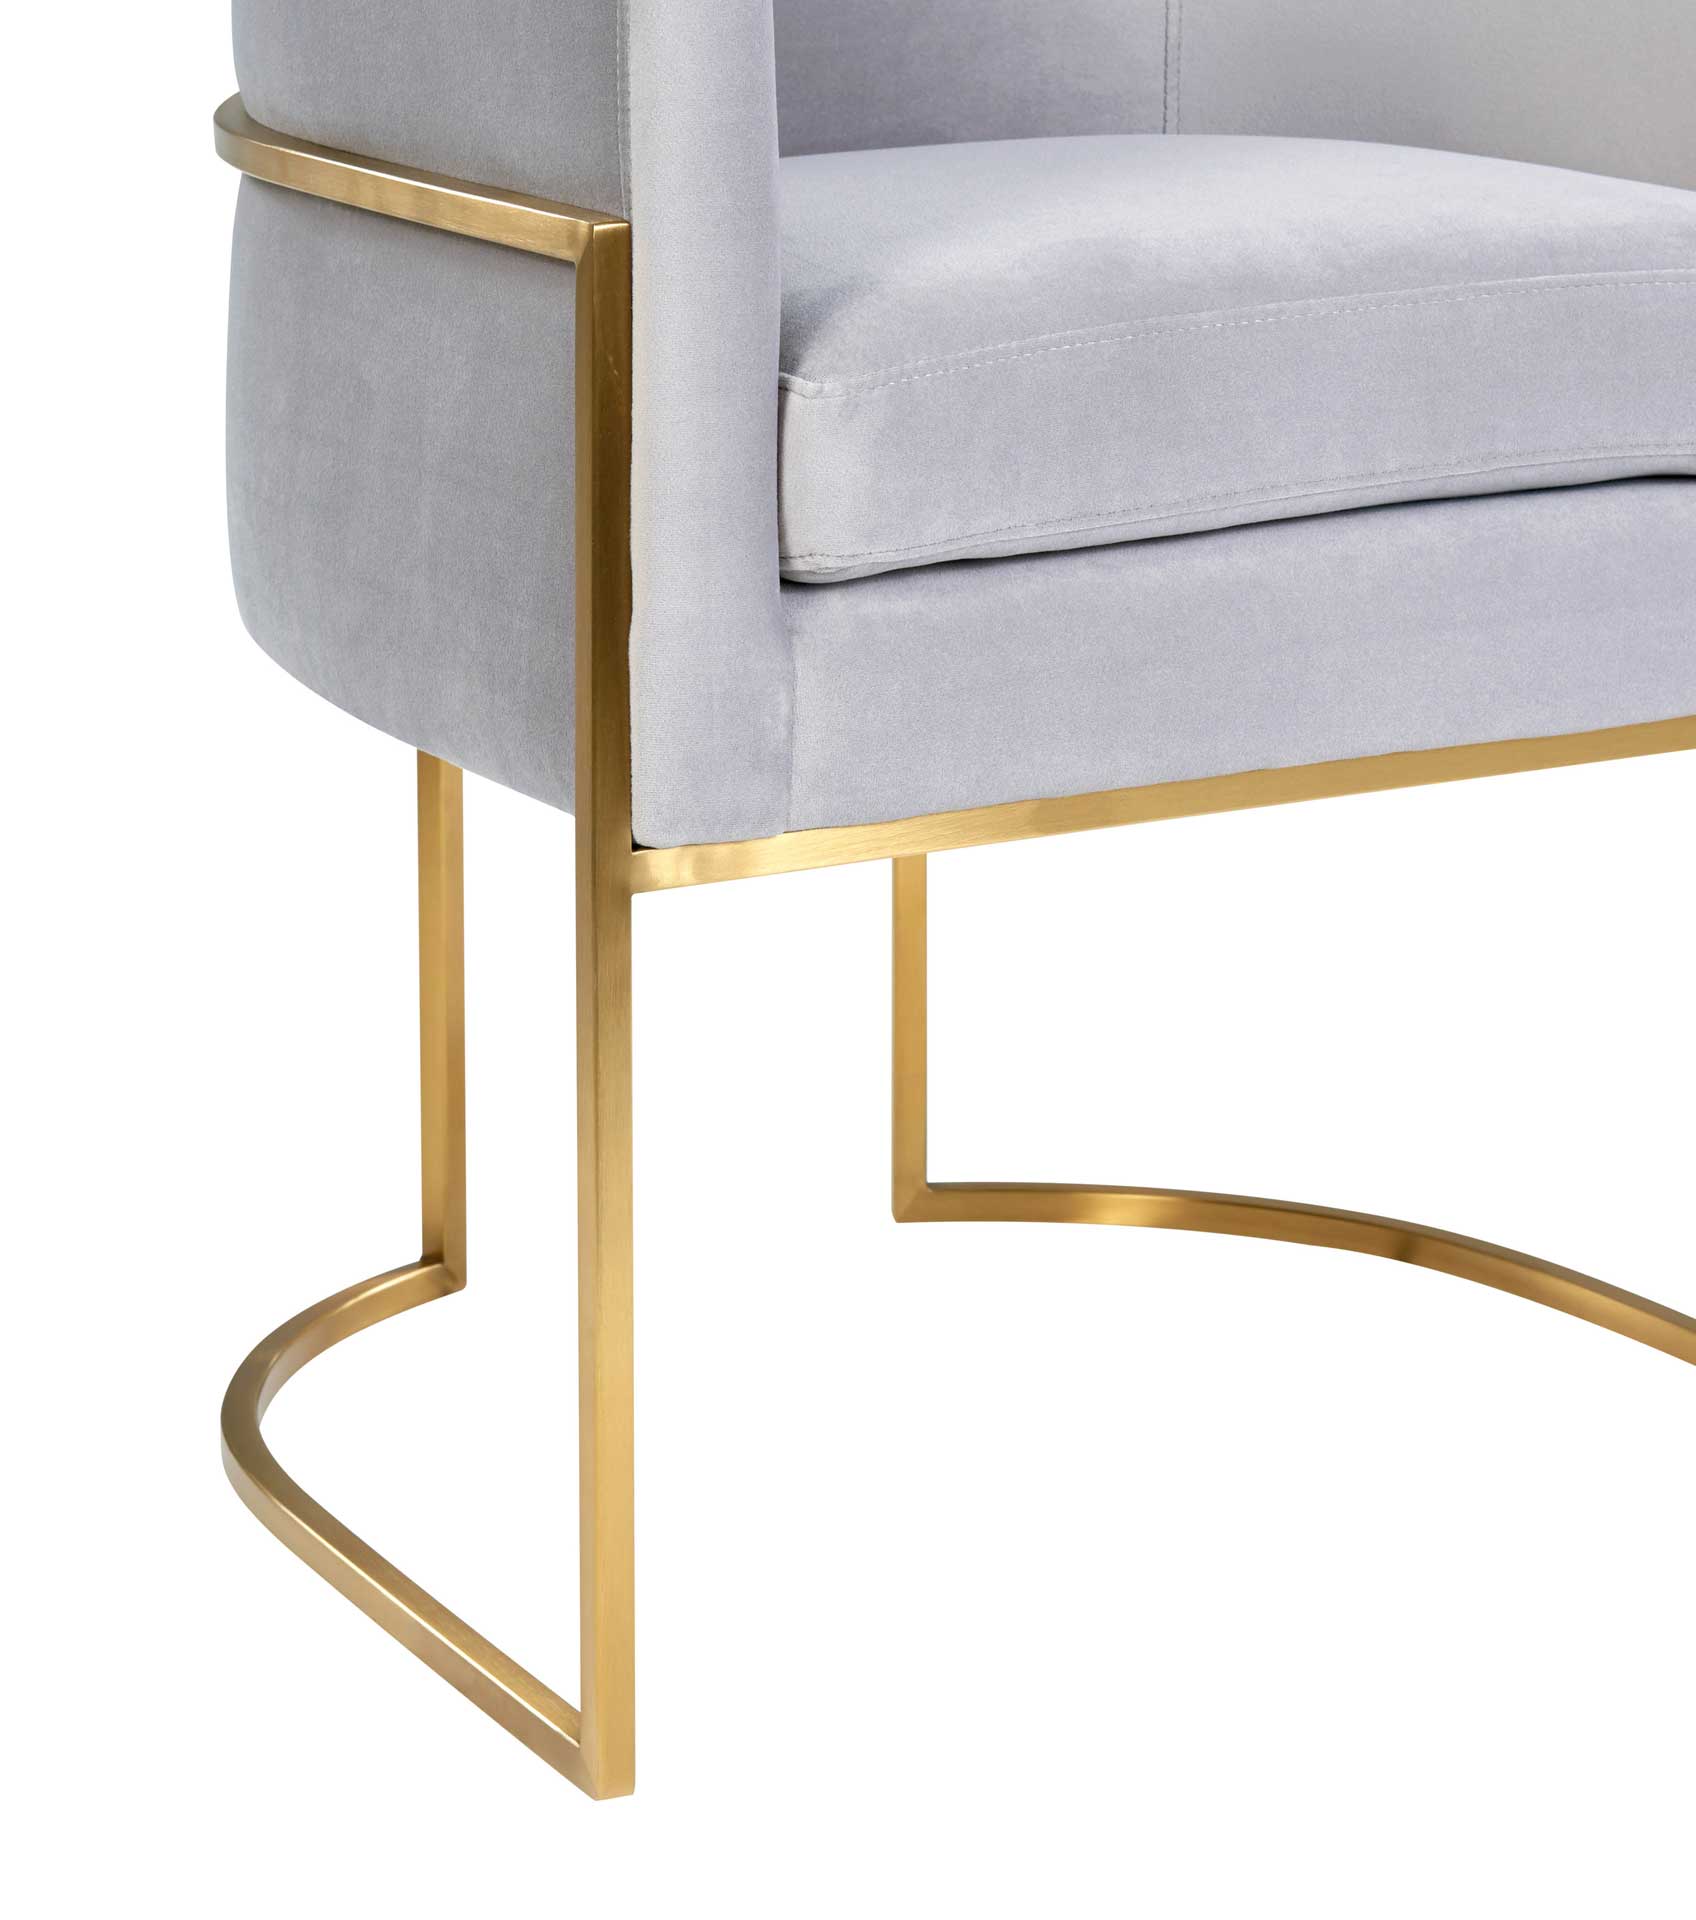 Gianni Gold Leg Velvet Dining Chair Gray